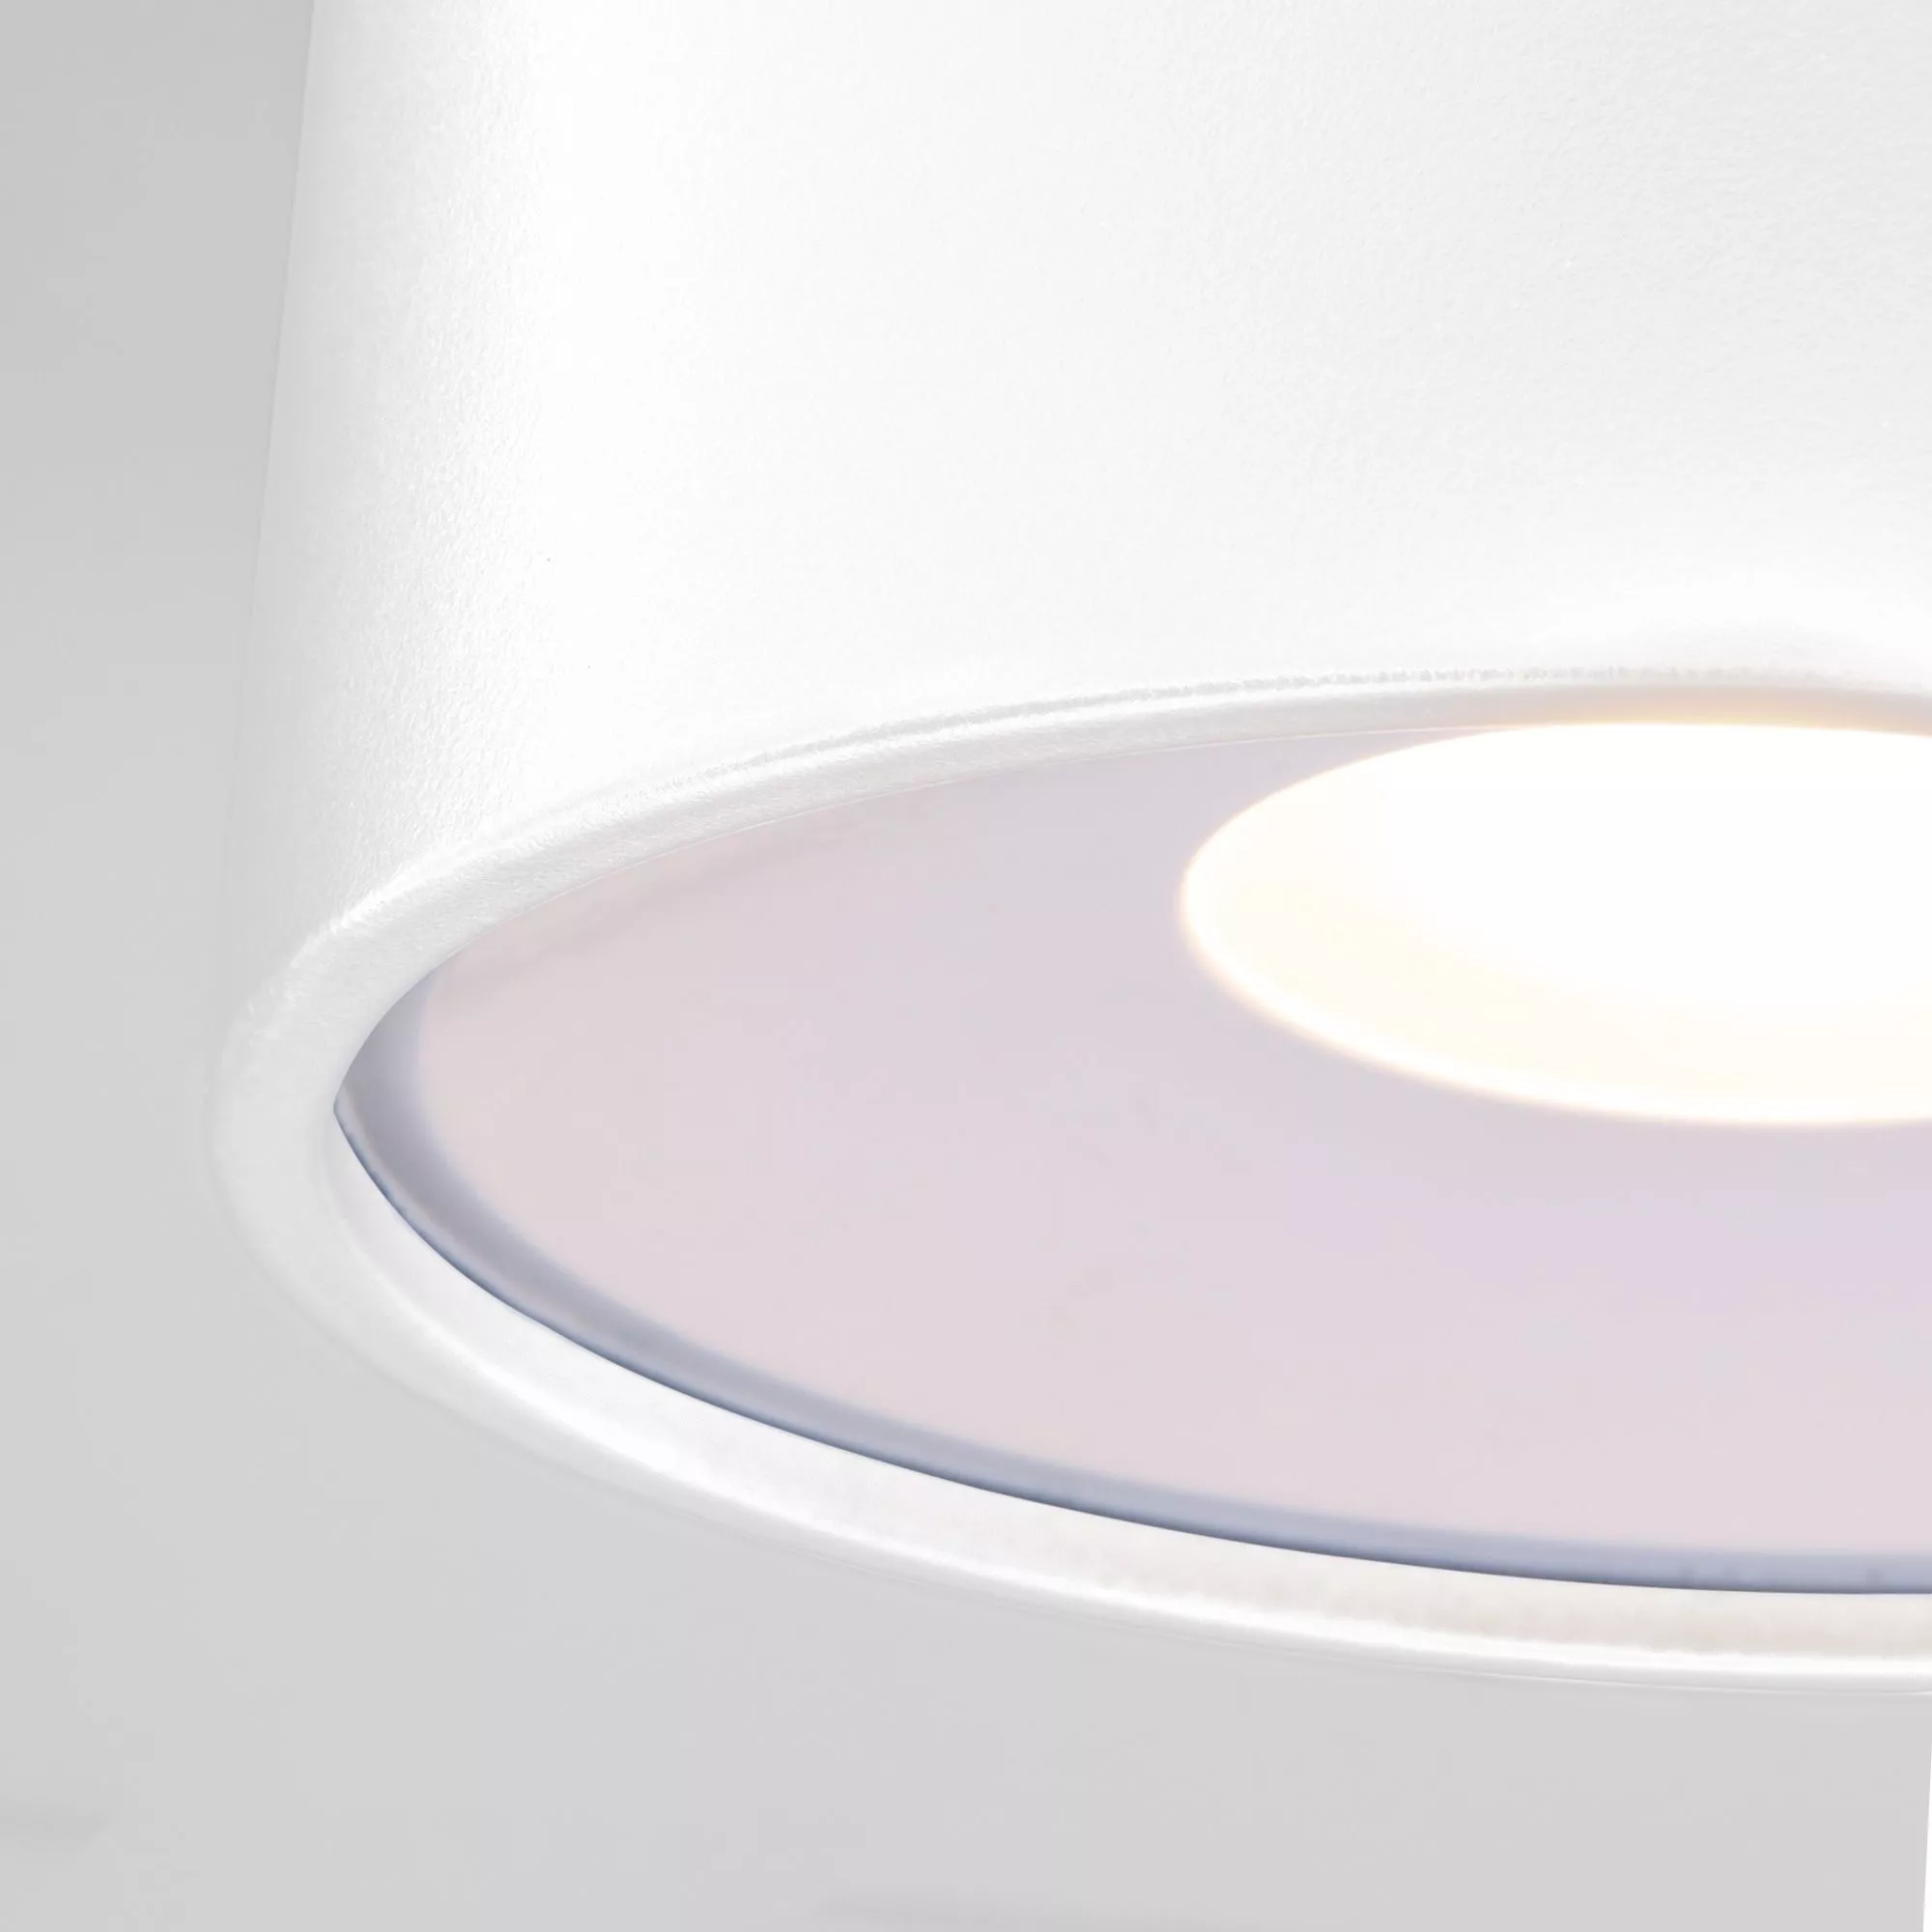 Точечный накладной светильник Elektrostandard Light LED 35141/H Белый